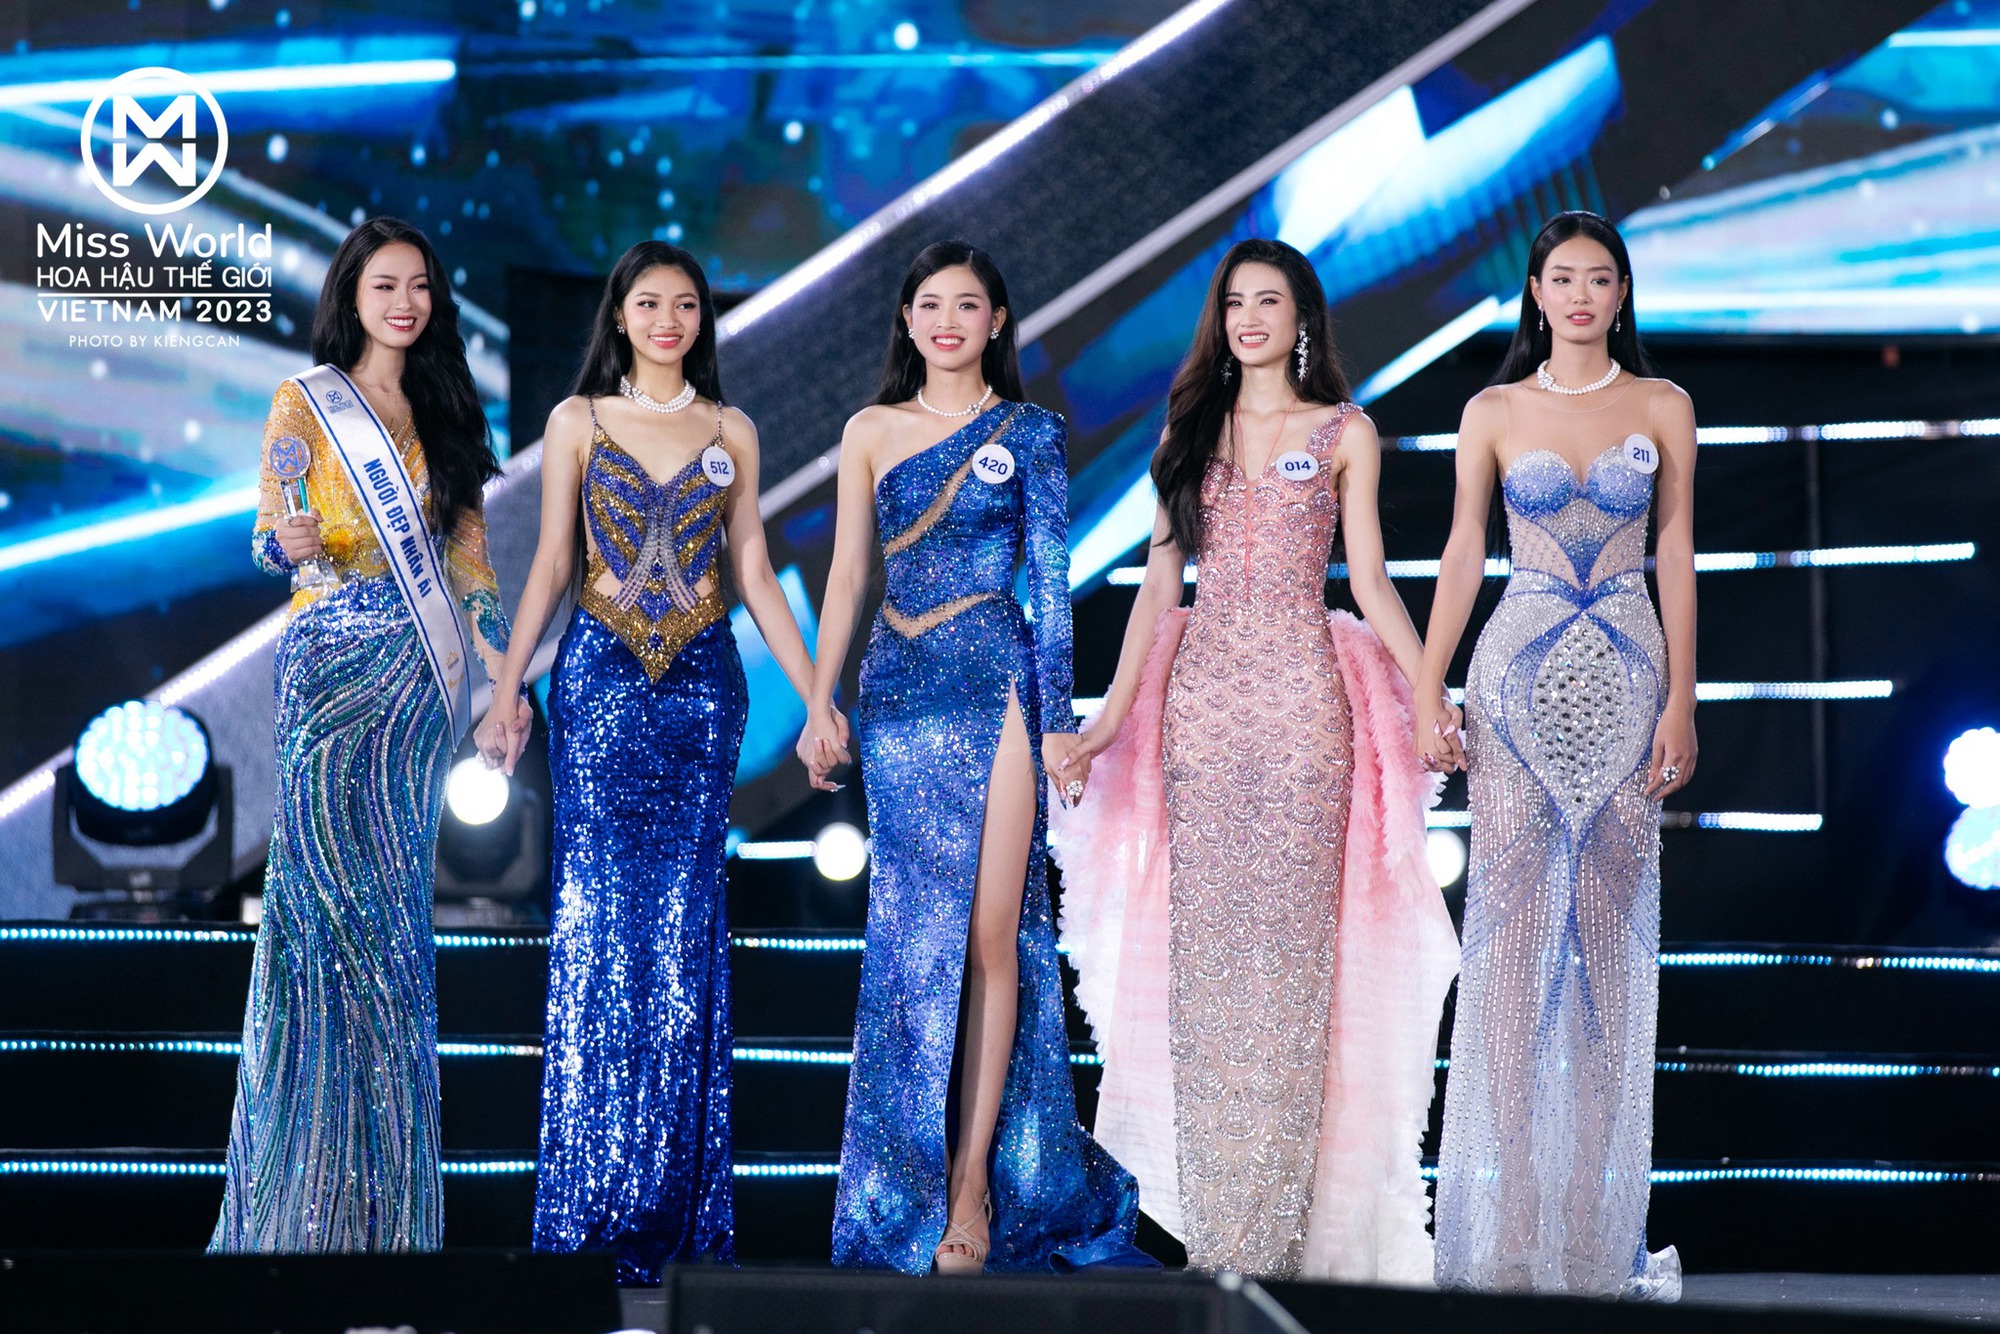 Huỳnh Trần Ý Nhi đăng quang Miss World Vietnam 2023 - Ảnh 16.